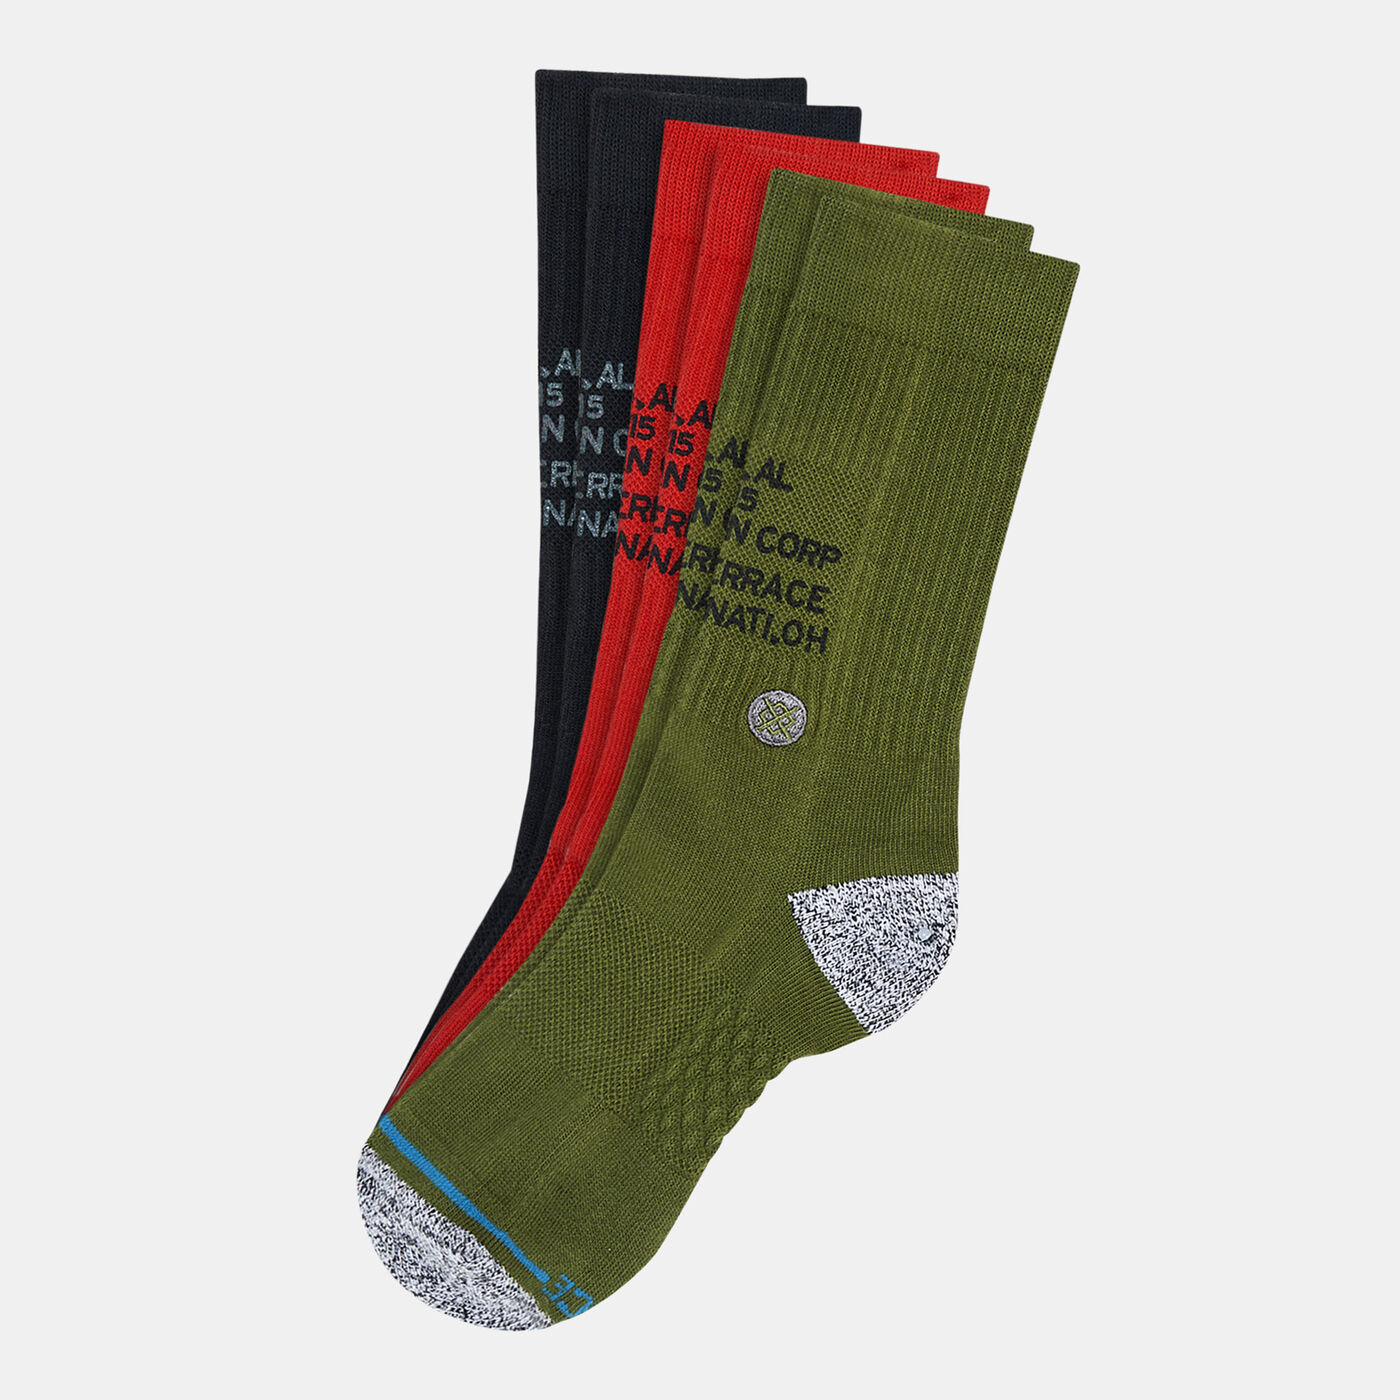 Corp 3-Of-A-Kind Socks